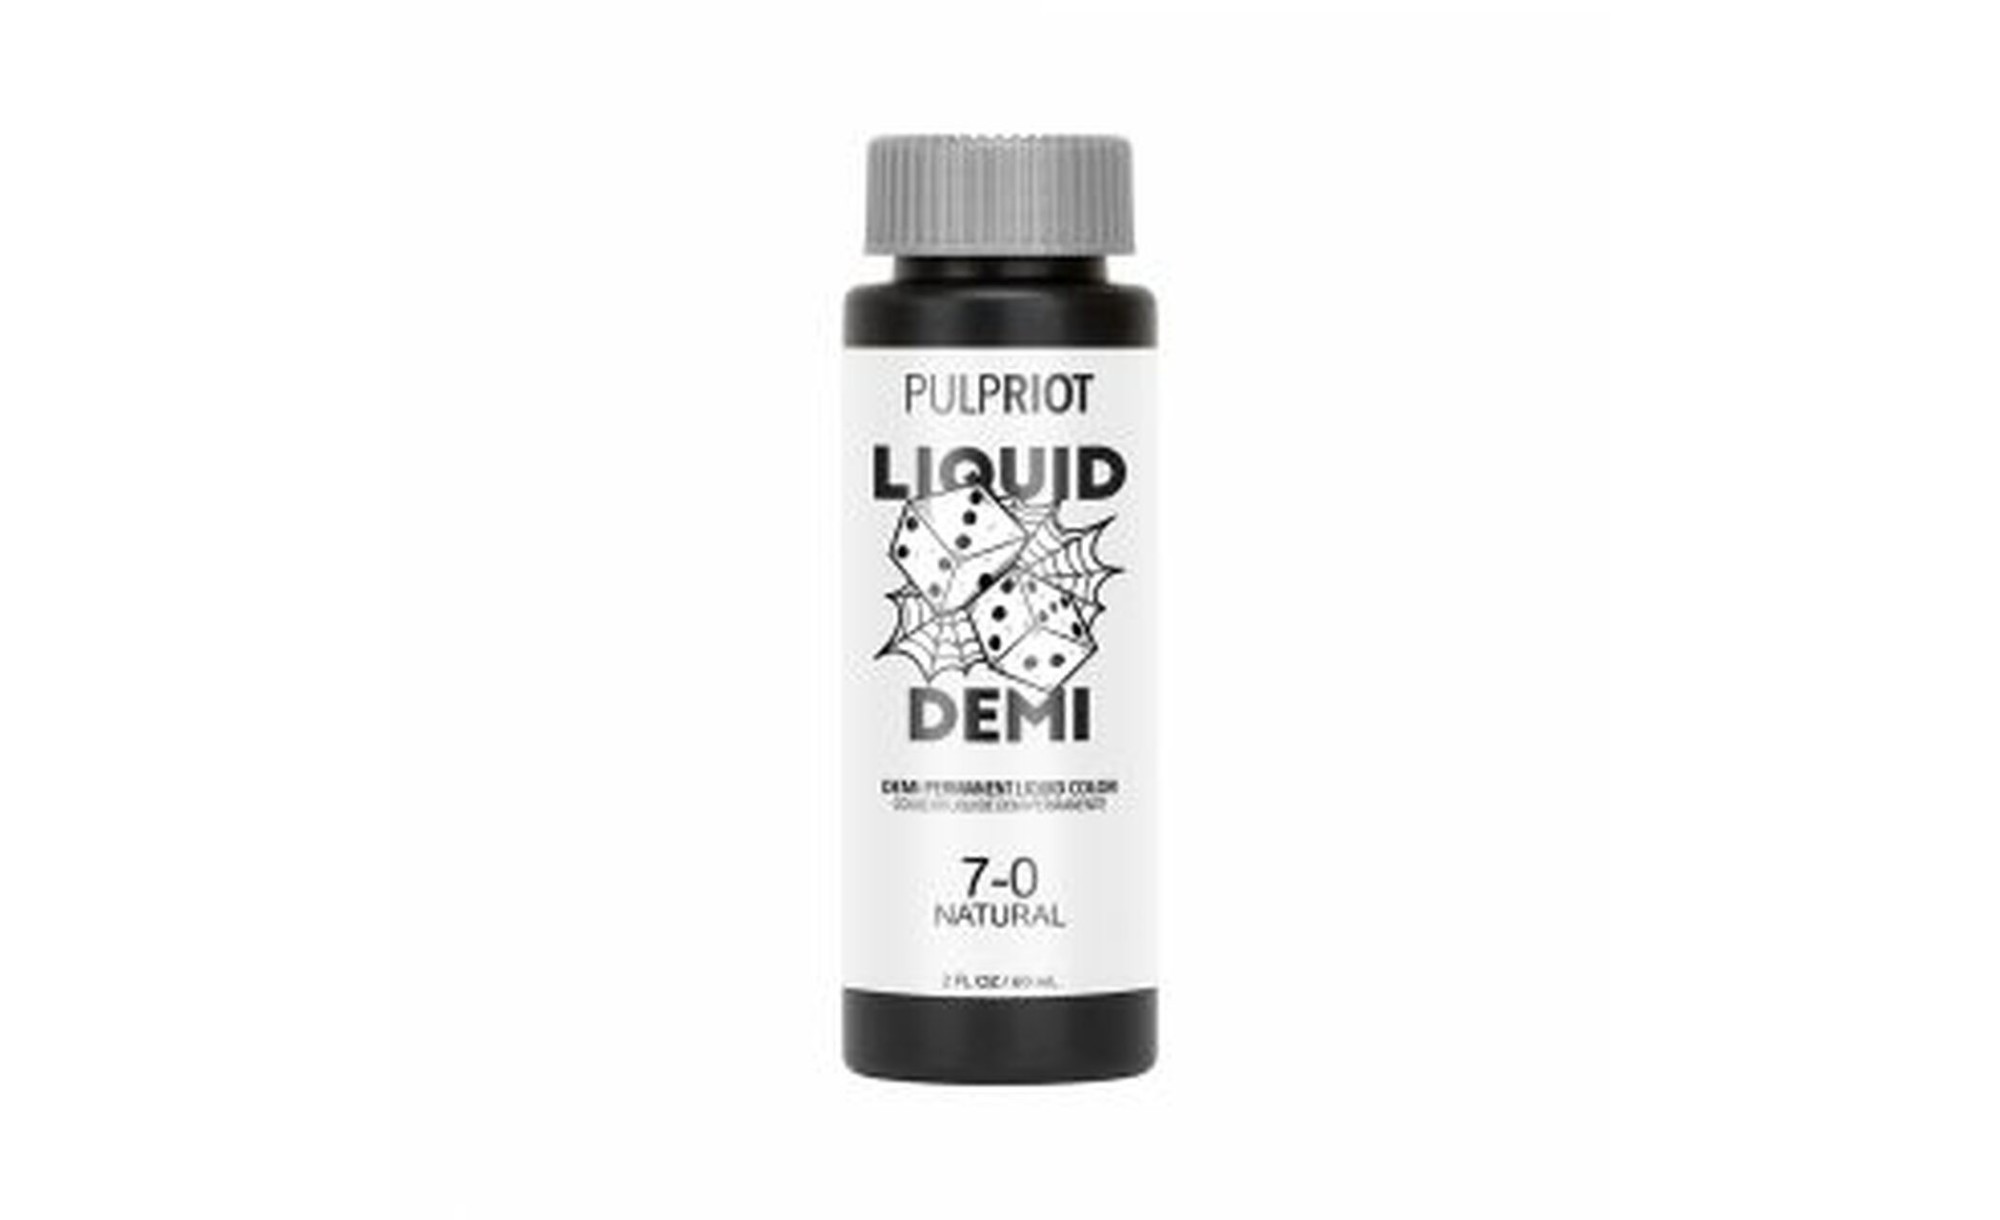 Pulp Riot Liquid Demi Natural 7.0